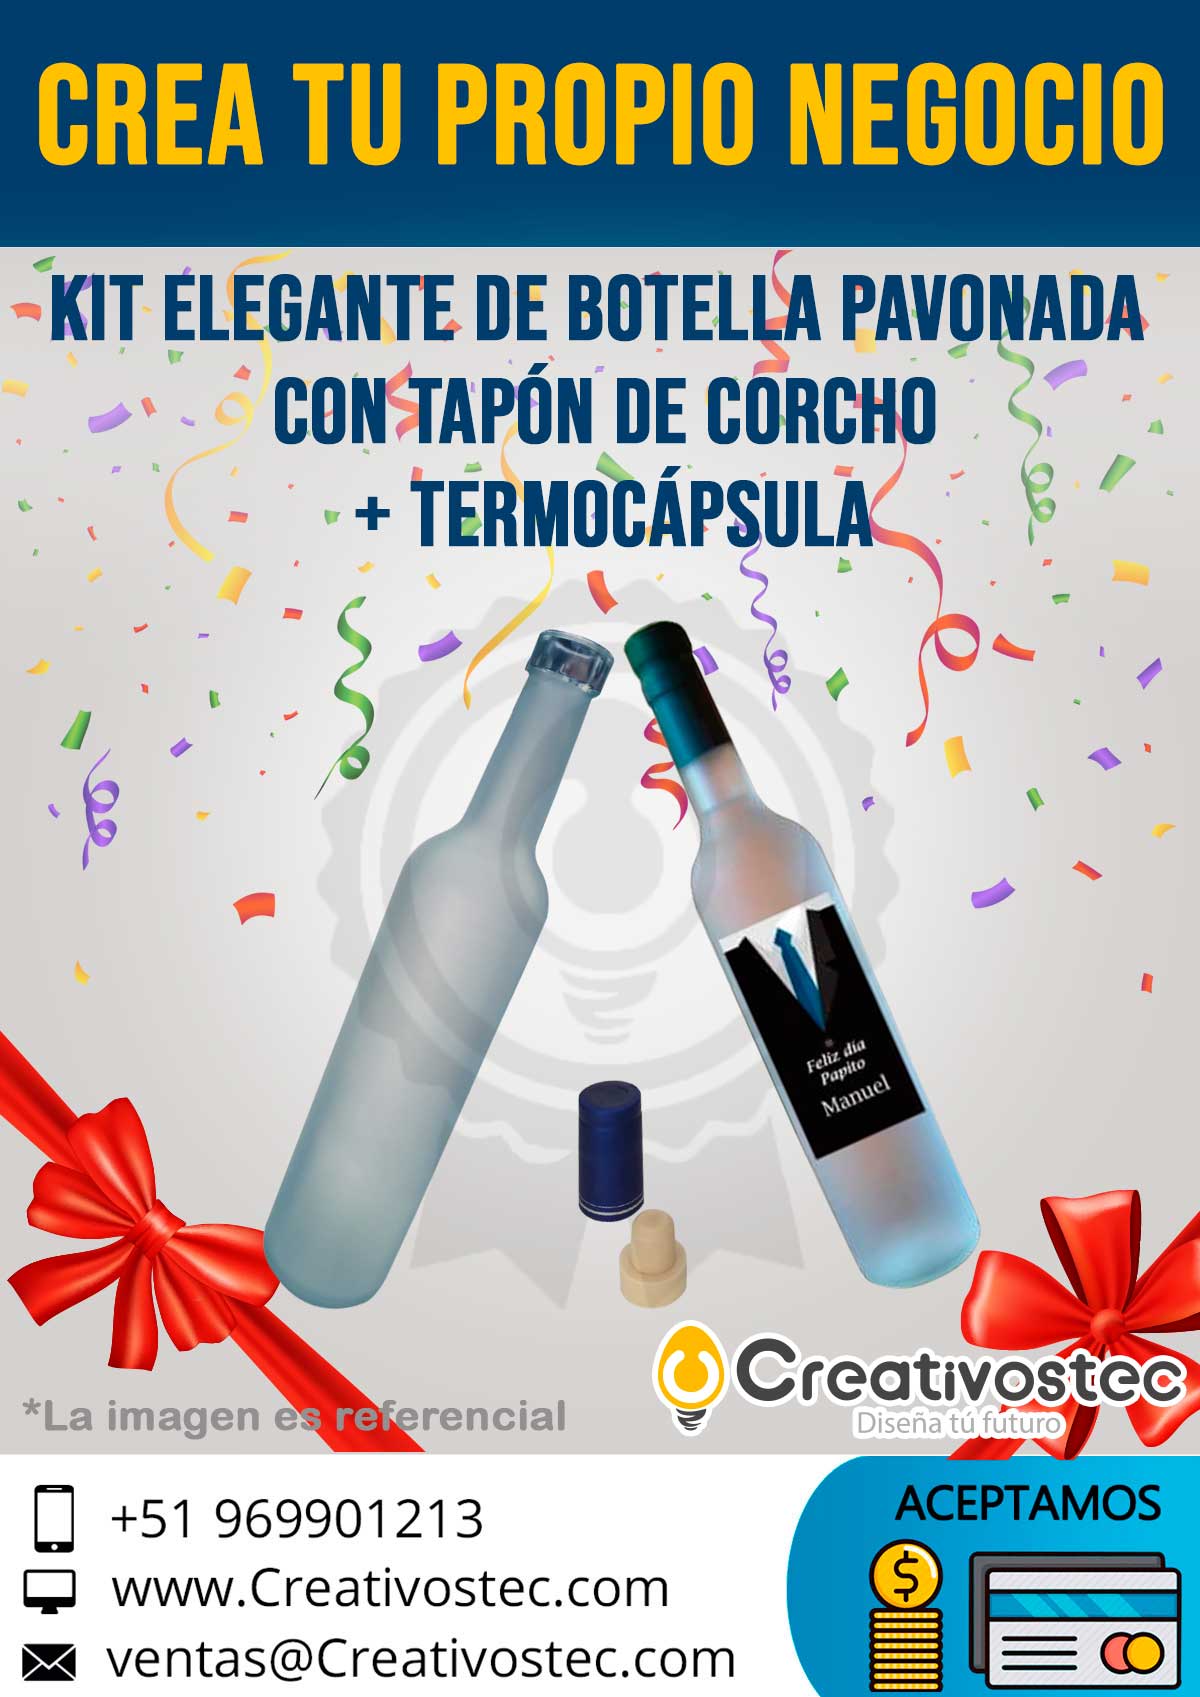 Kit-Elegante-Botella-Pavonada-Tapon-Corcho-Termocápsula-creativostec-promocion-mejor-calidad-oferta-descuento-sublimacion-nuevo-lima-arequipa-trujillo-chiclayo-piura-cusco-